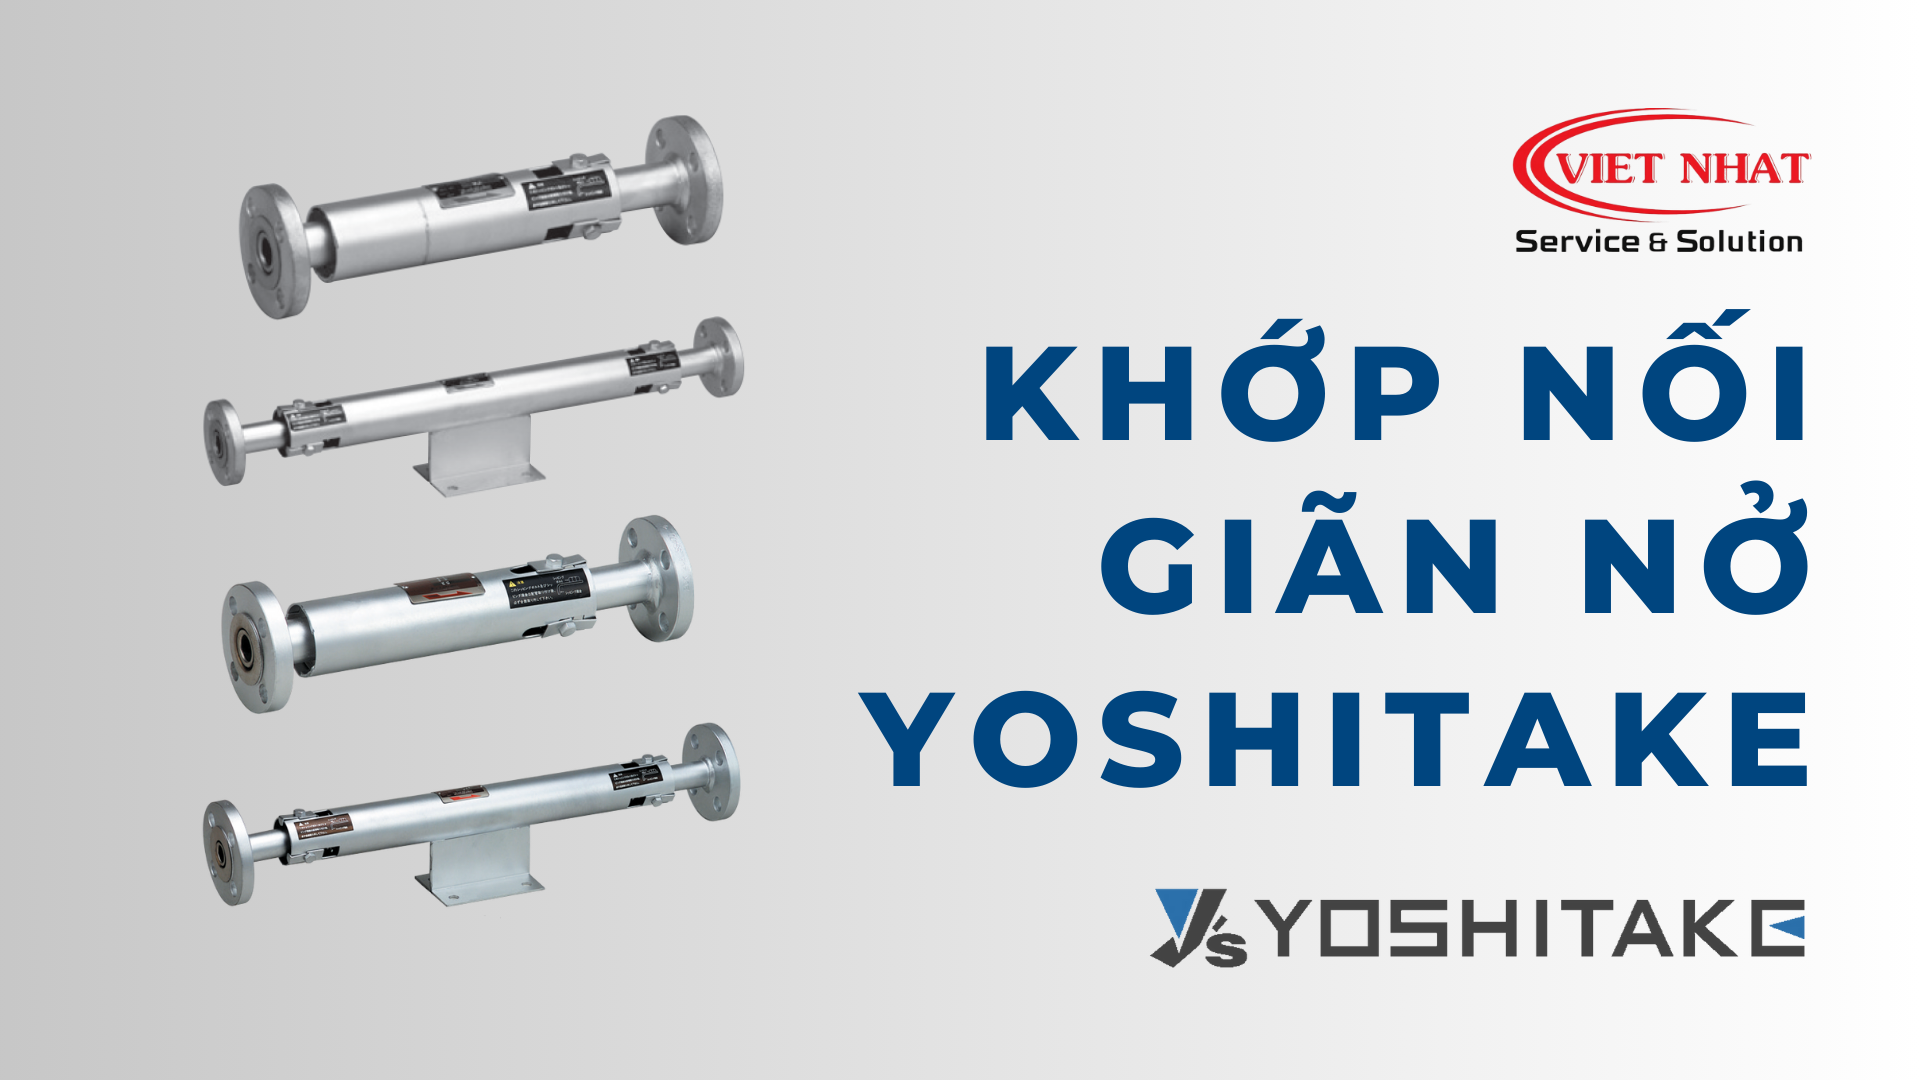 Khớp nối giãn nở yoshitake - Thiết bị hữu ích cho hệ thống đường ống